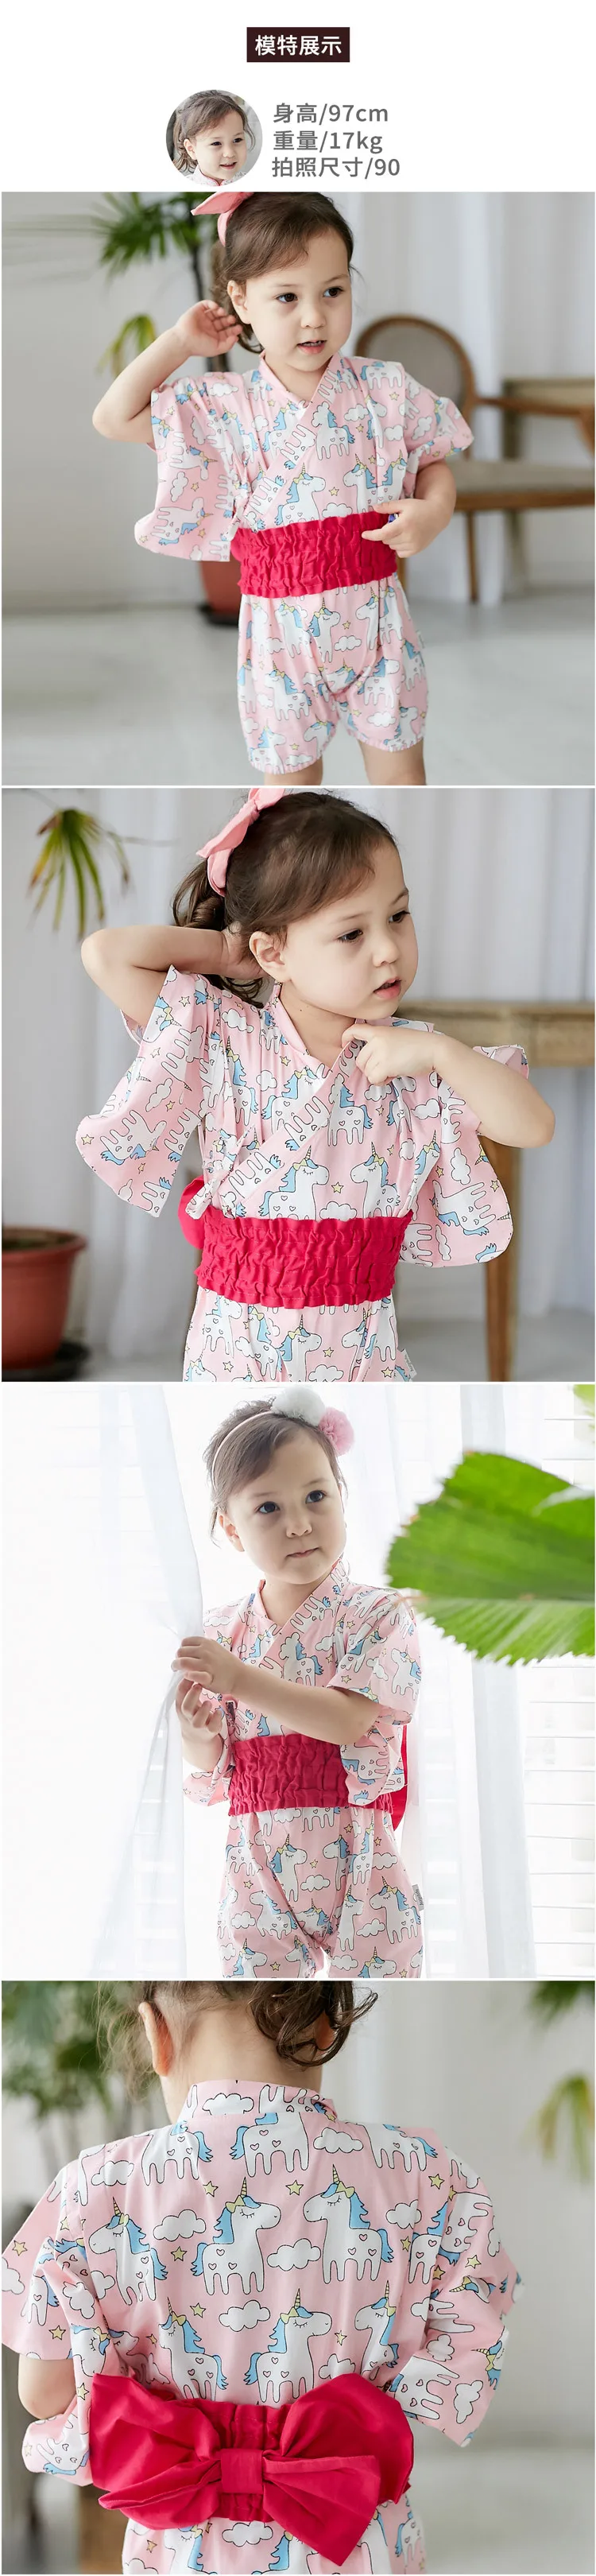 Детская одежда, кимоно в японском стиле, детские комбинезоны, летняя одежда для девочек, детские кимоно с поясом на талии, одежда для маленьких мальчиков